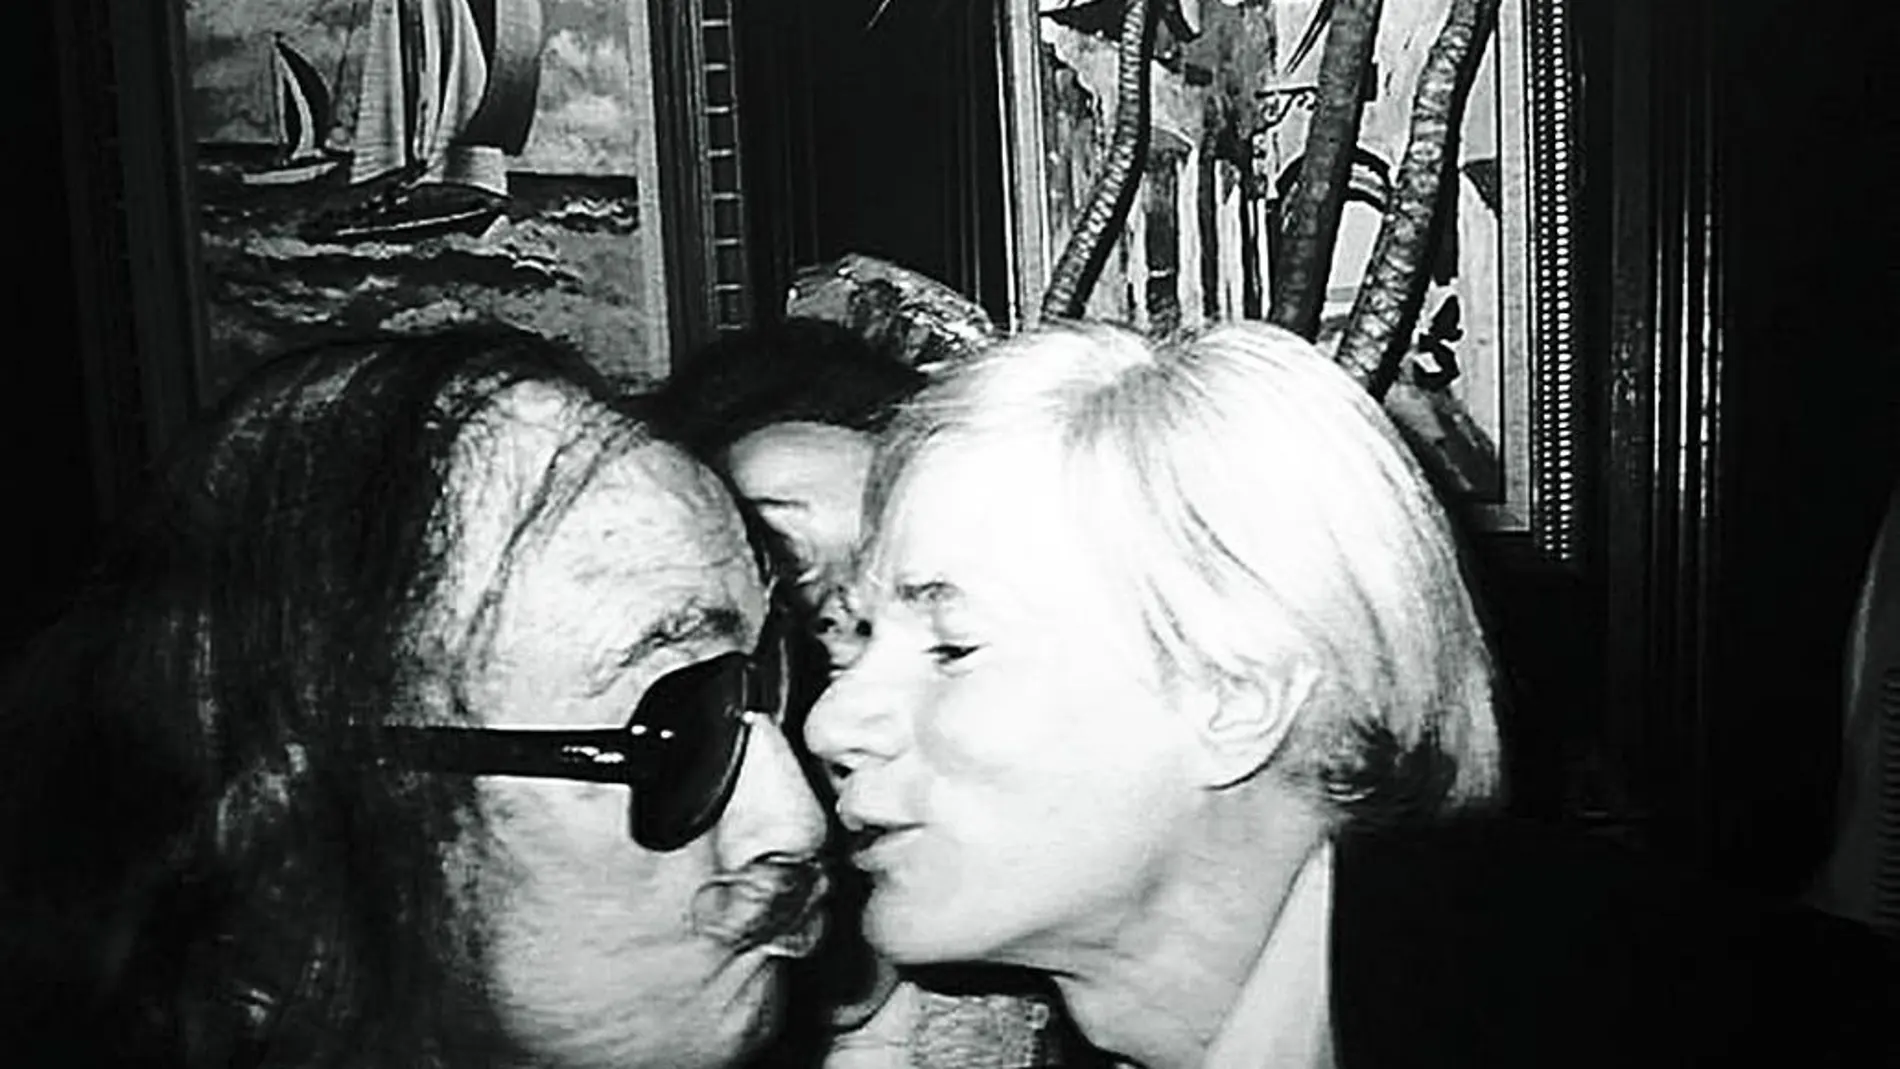 Salvador Dalí y Andy Warhol, que compartieron una de las amistades más insólitas en el arte del siglo XX, se vieron en numerosas ocasiones en Nueva York